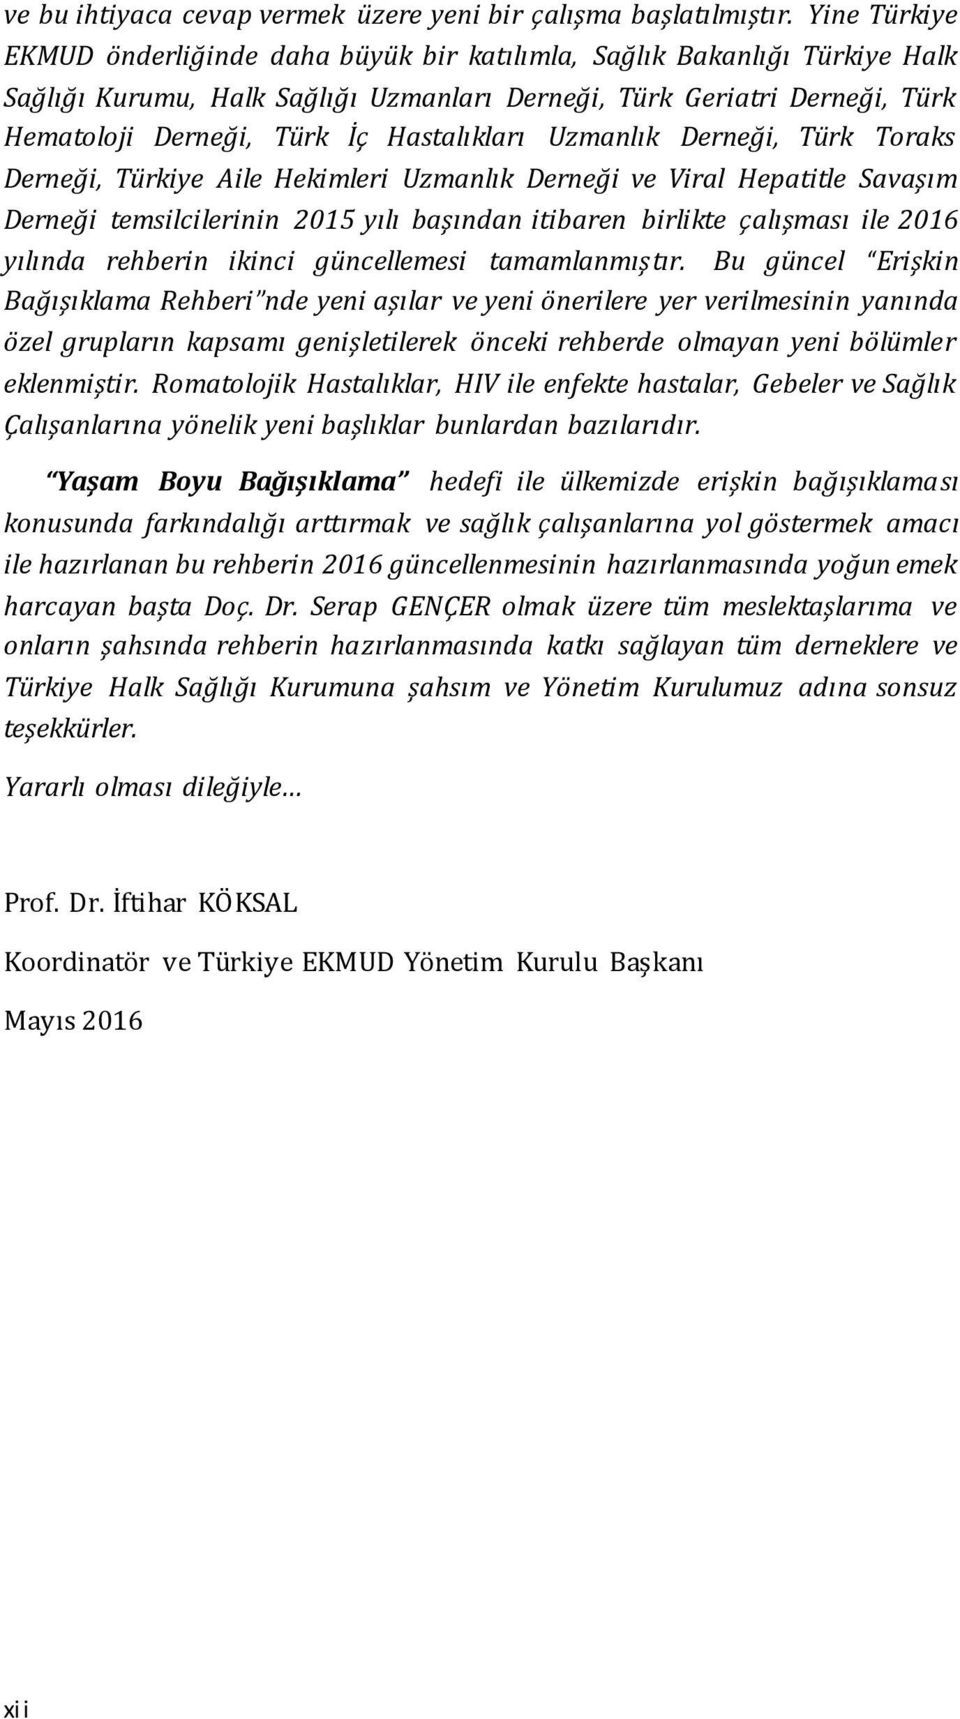 Hastalıkları Uzmanlık Derneği, Türk Toraks Derneği, Türkiye Aile Hekimleri Uzmanlık Derneği ve Viral Hepatitle Savaşım Derneği temsilcilerinin 2015 yılı başından itibaren birlikte çalışması ile 2016